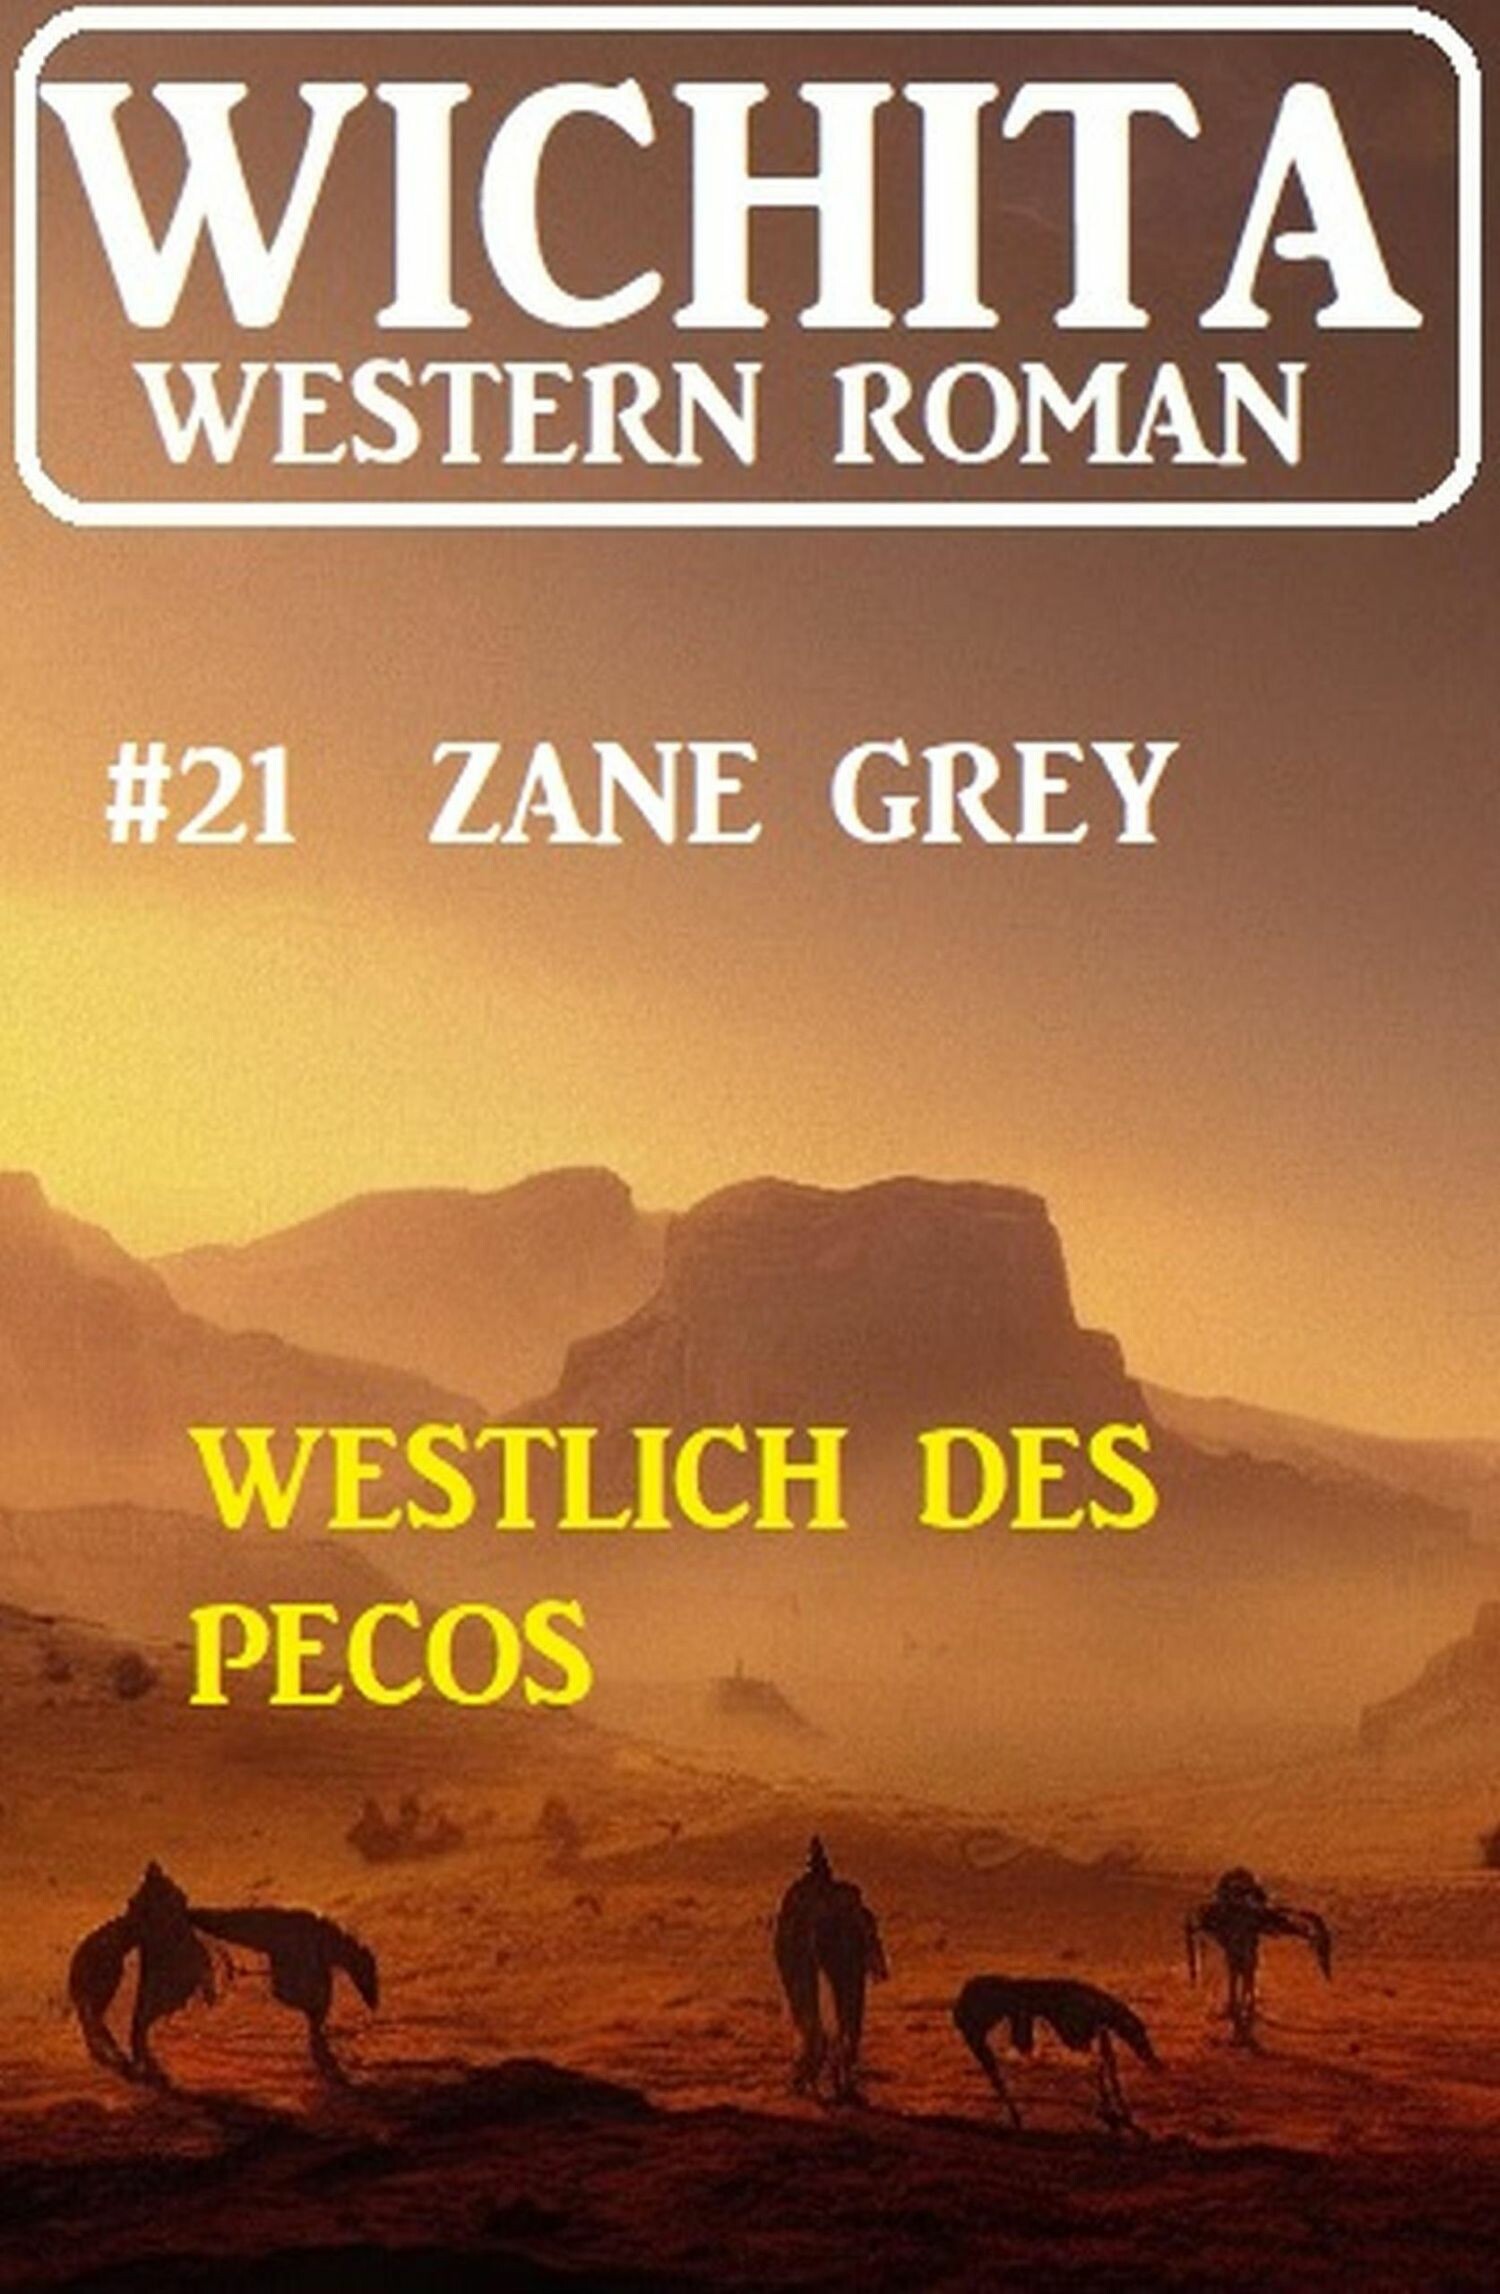 Westlich des Pecos: Wichita Western Roman 21